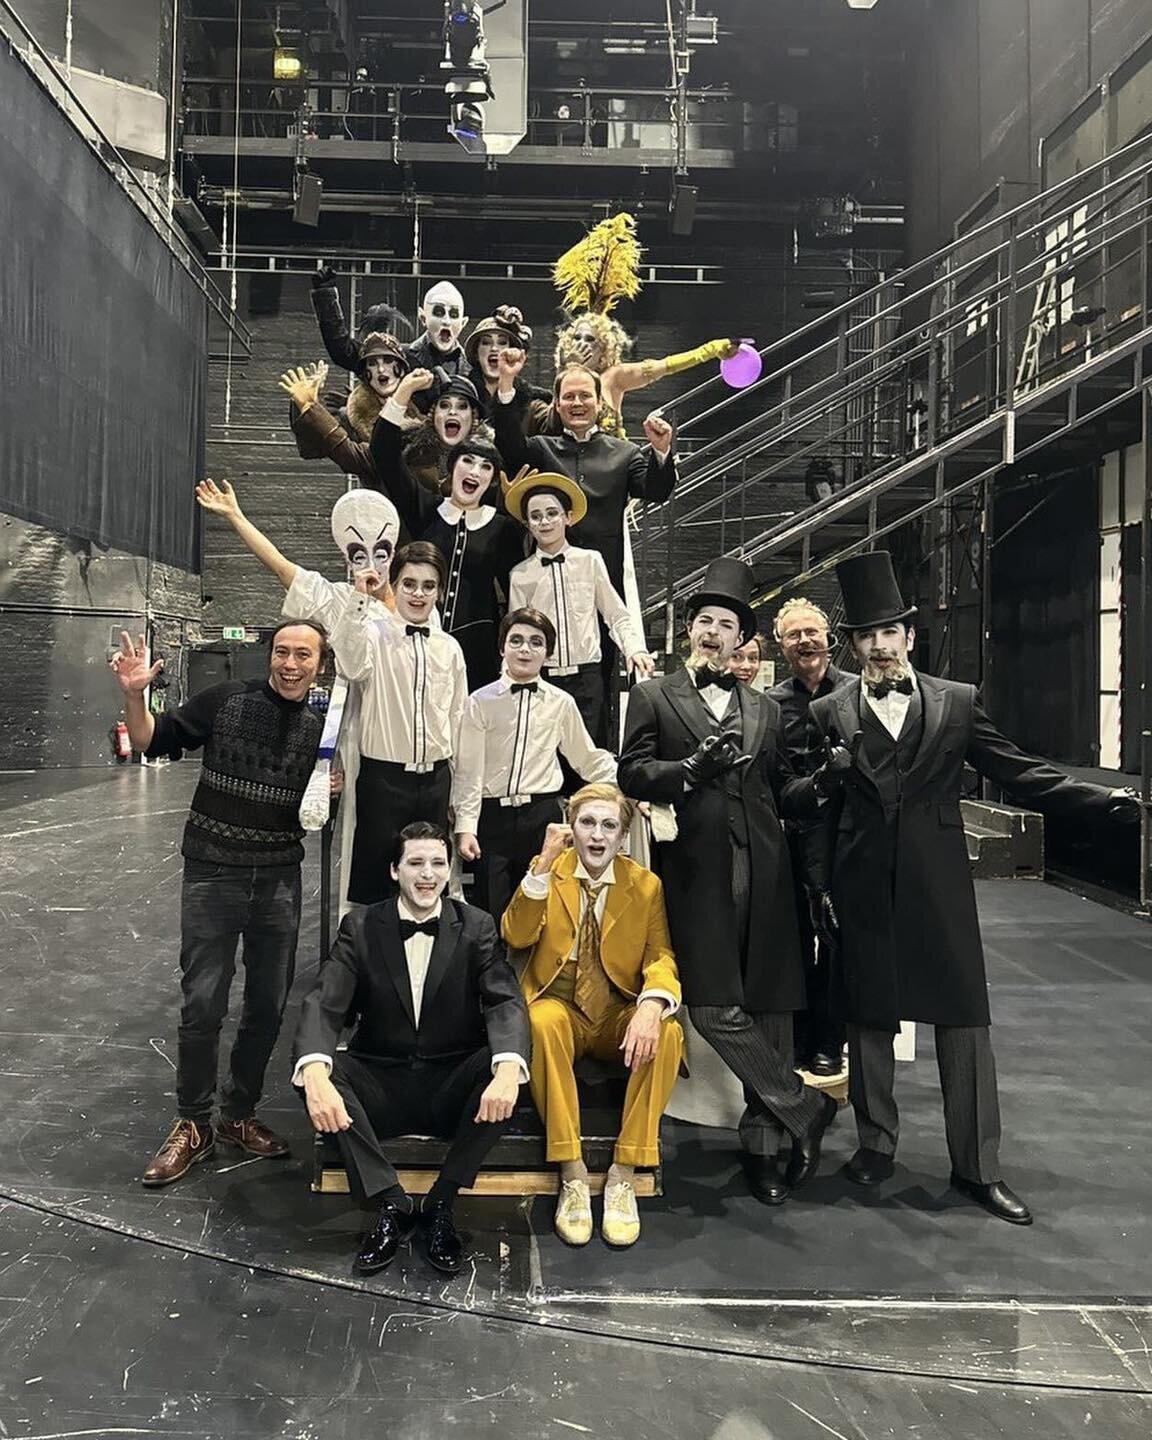 Das Team der 150. Vorstellung von &bdquo;Die Zauberfl&ouml;te&ldquo; der Komischen Oper

Nach dem Auftritt beginnt die Party!

@komischeoperberlin #Mozart
#DieZauberfl&ouml;te #Tamino
#hermanxsgatell